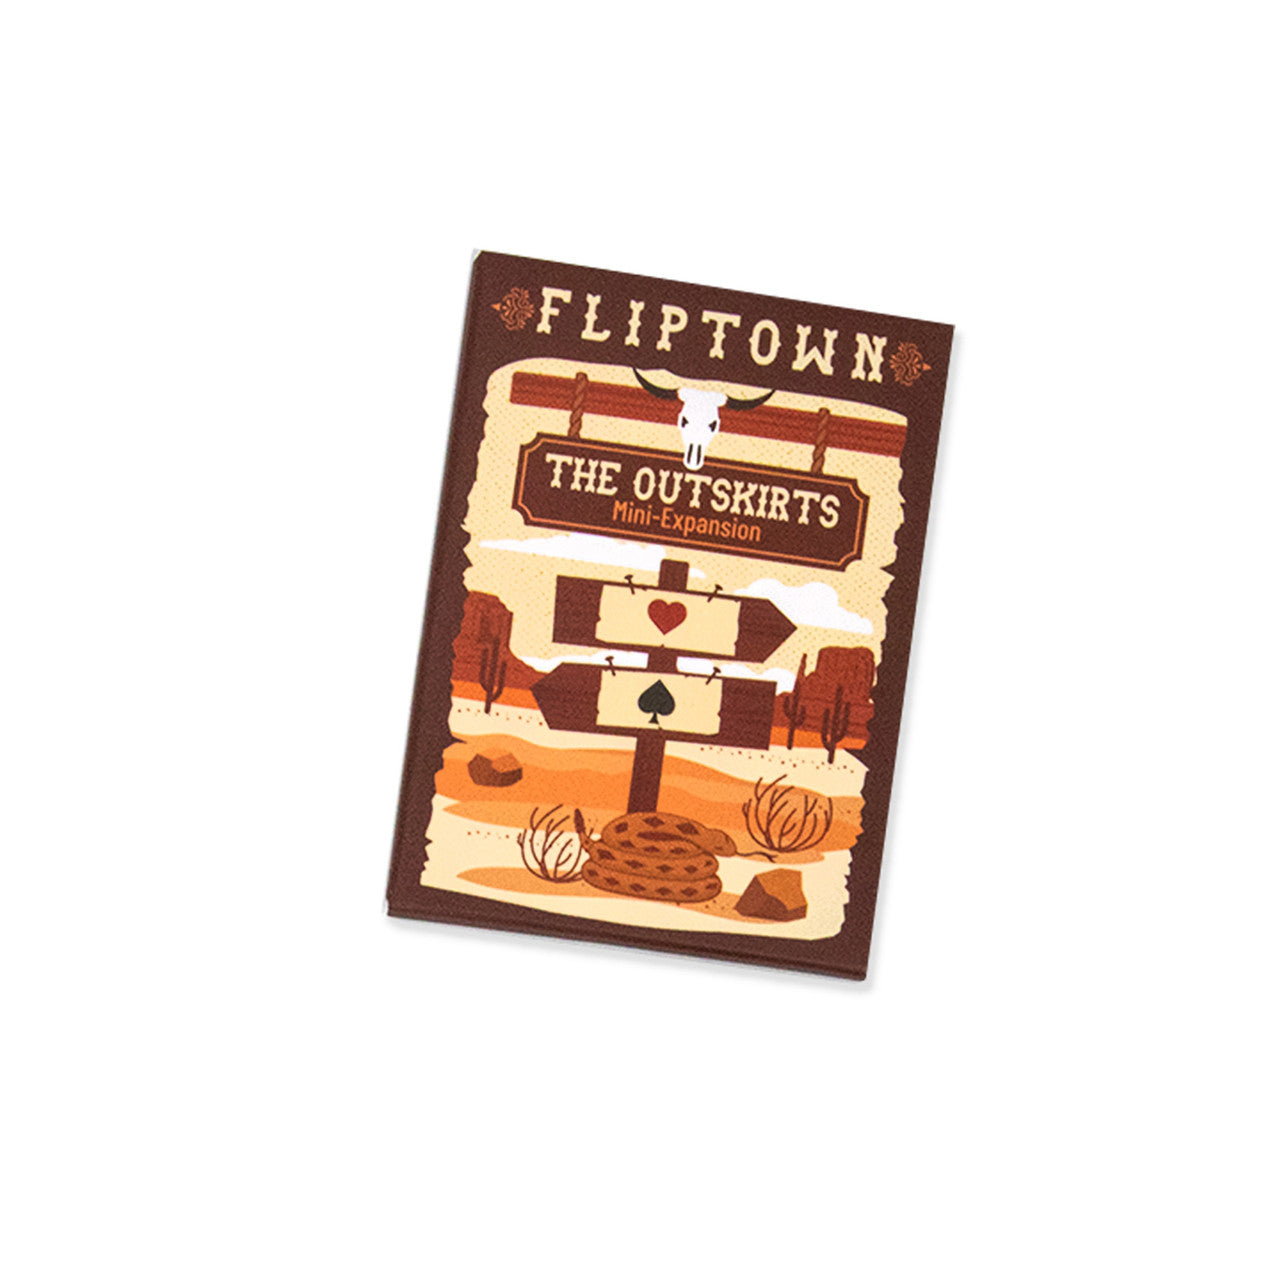 Fliptown: la expansión de las afueras